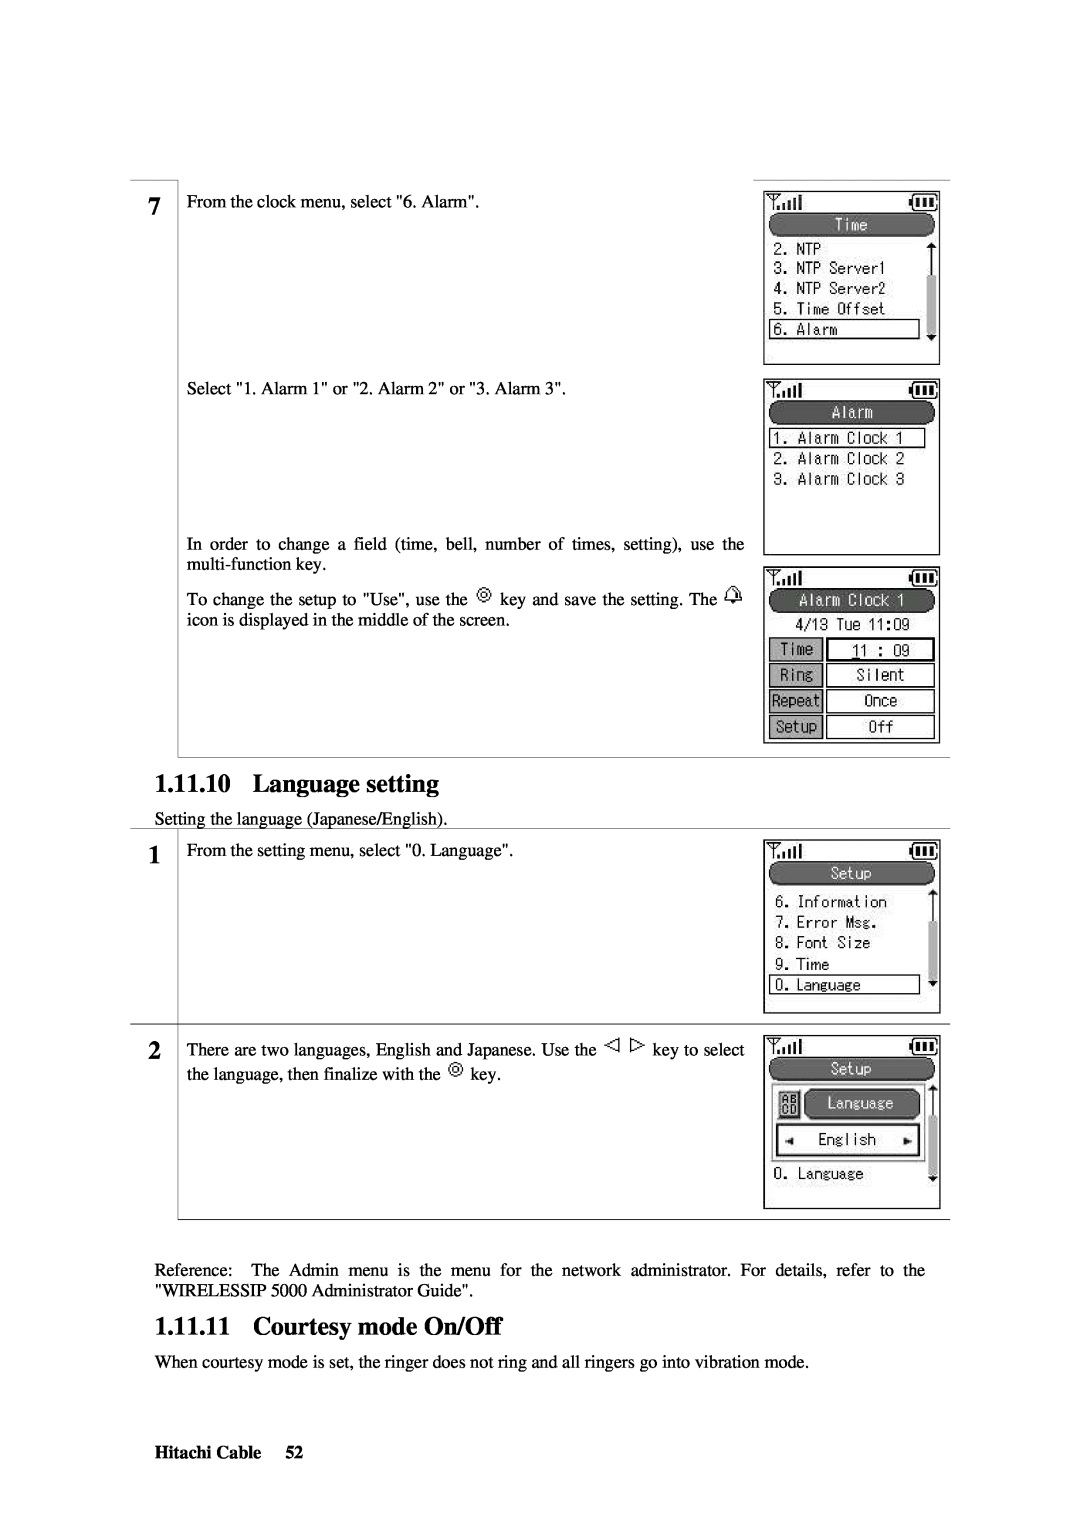 Hitachi TD61-2472 user manual Language setting, Courtesy mode On/Off 